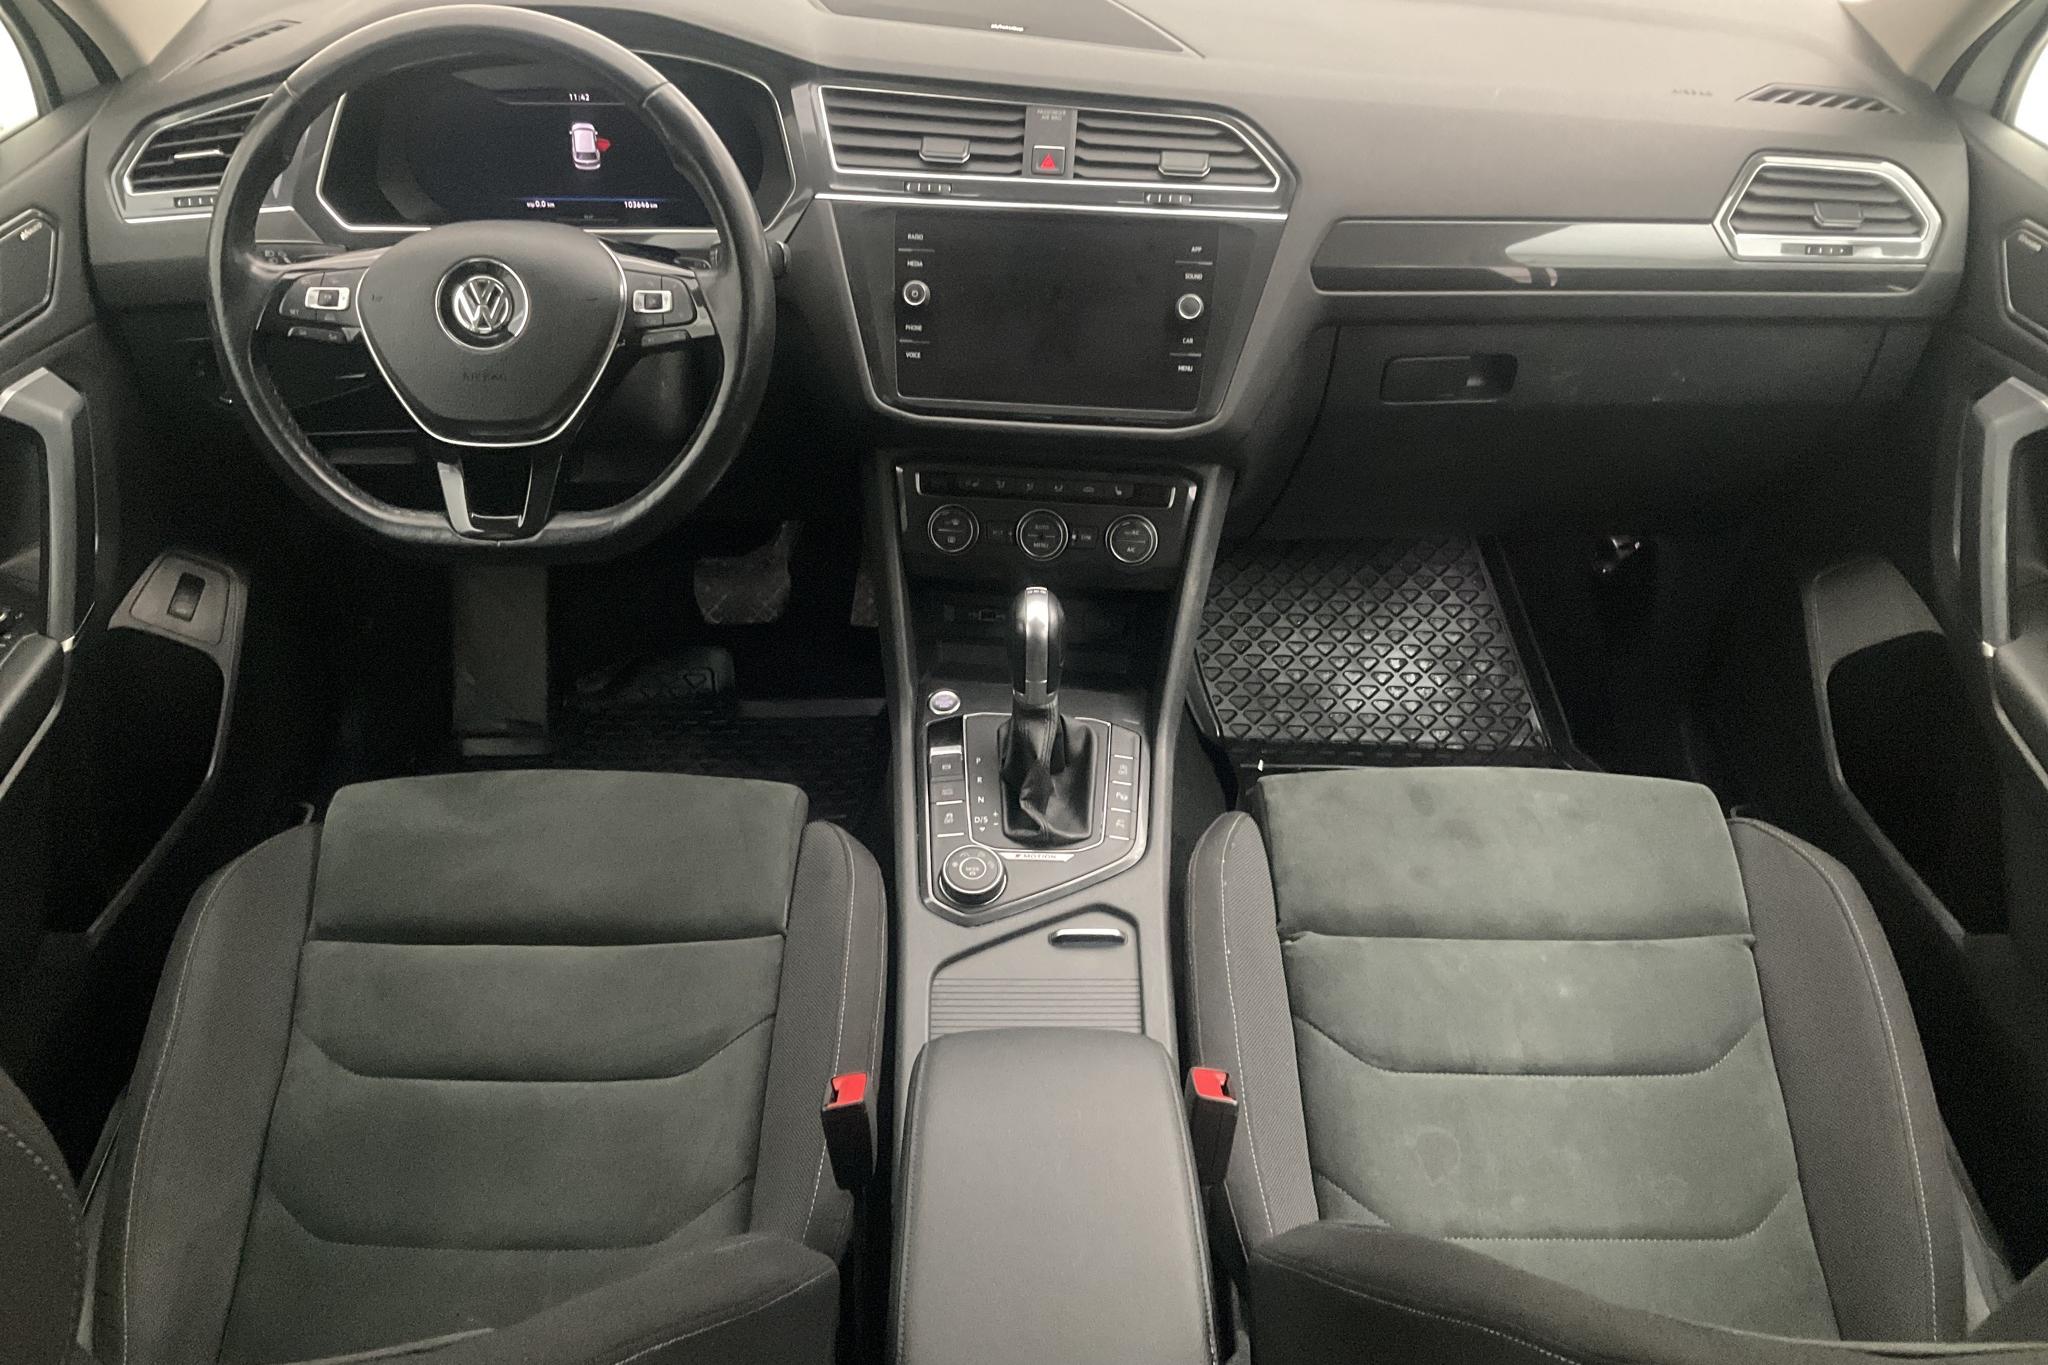 VW Tiguan Allspace 2.0 TDI 4MOTION (190hk) - 103 650 km - Automatic - white - 2018